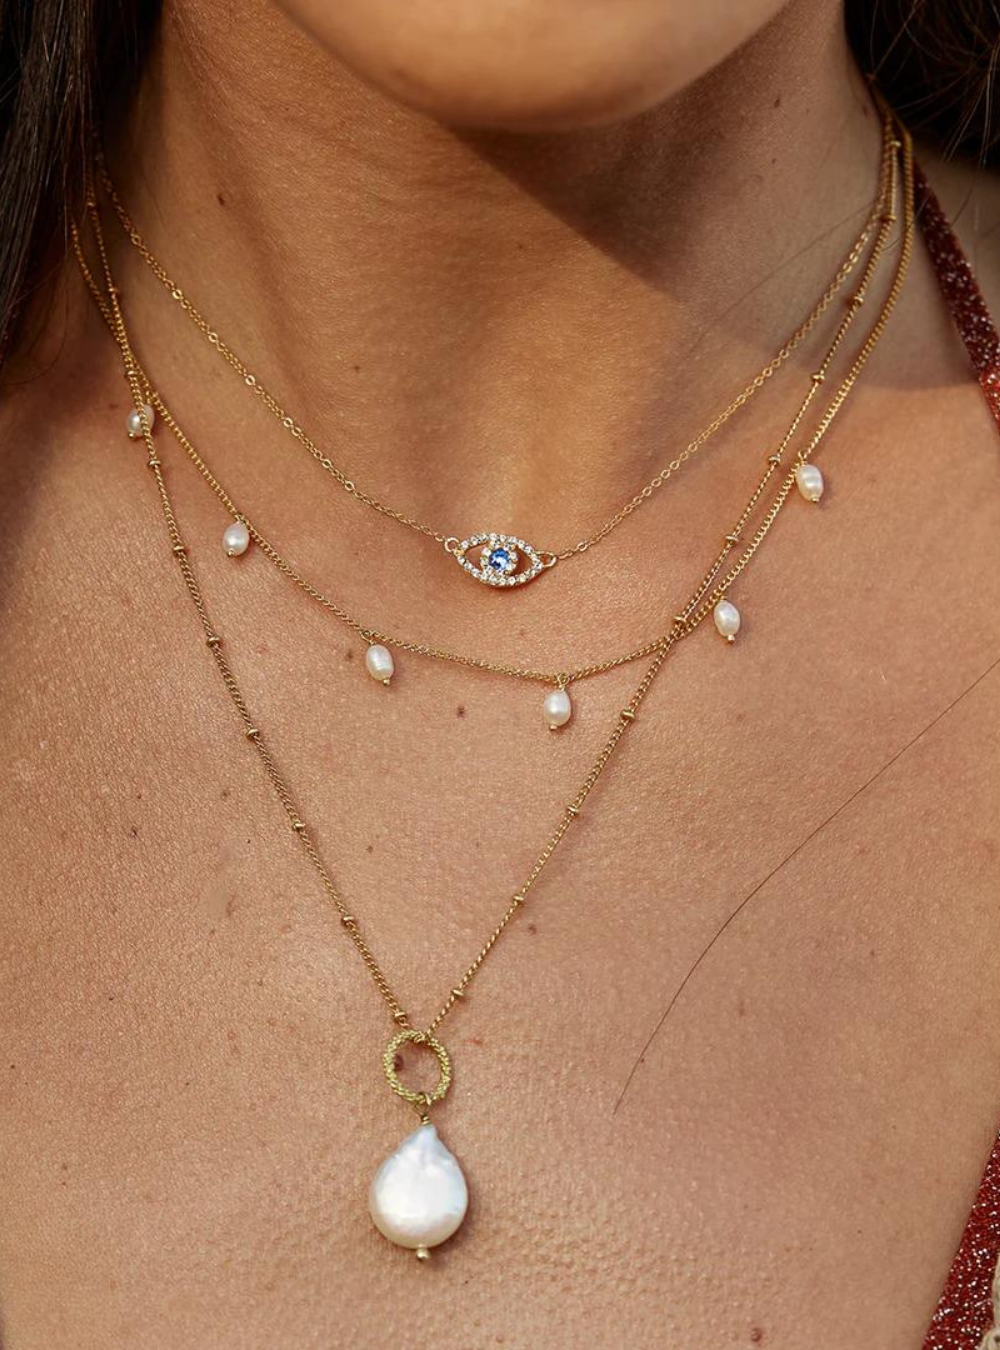 Positano Pearl & Chain Necklace